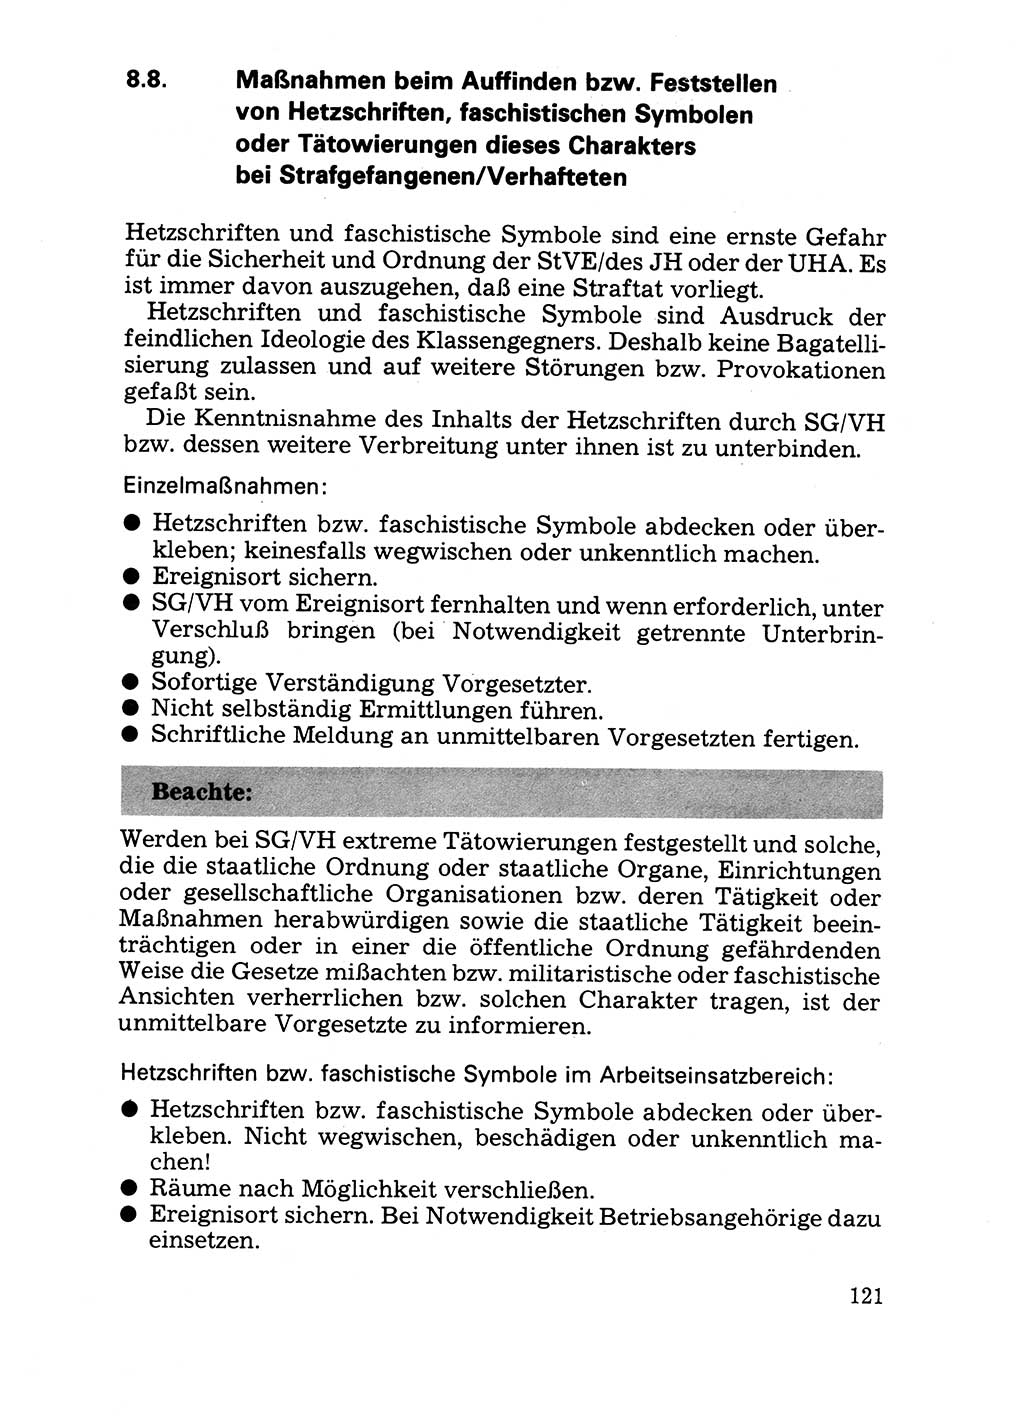 Handbuch für operative Dienste, Abteilung Strafvollzug (SV) [Ministerium des Innern (MdI) Deutsche Demokratische Republik (DDR)] 1981, Seite 121 (Hb. op. D. Abt. SV MdI DDR 1981, S. 121)